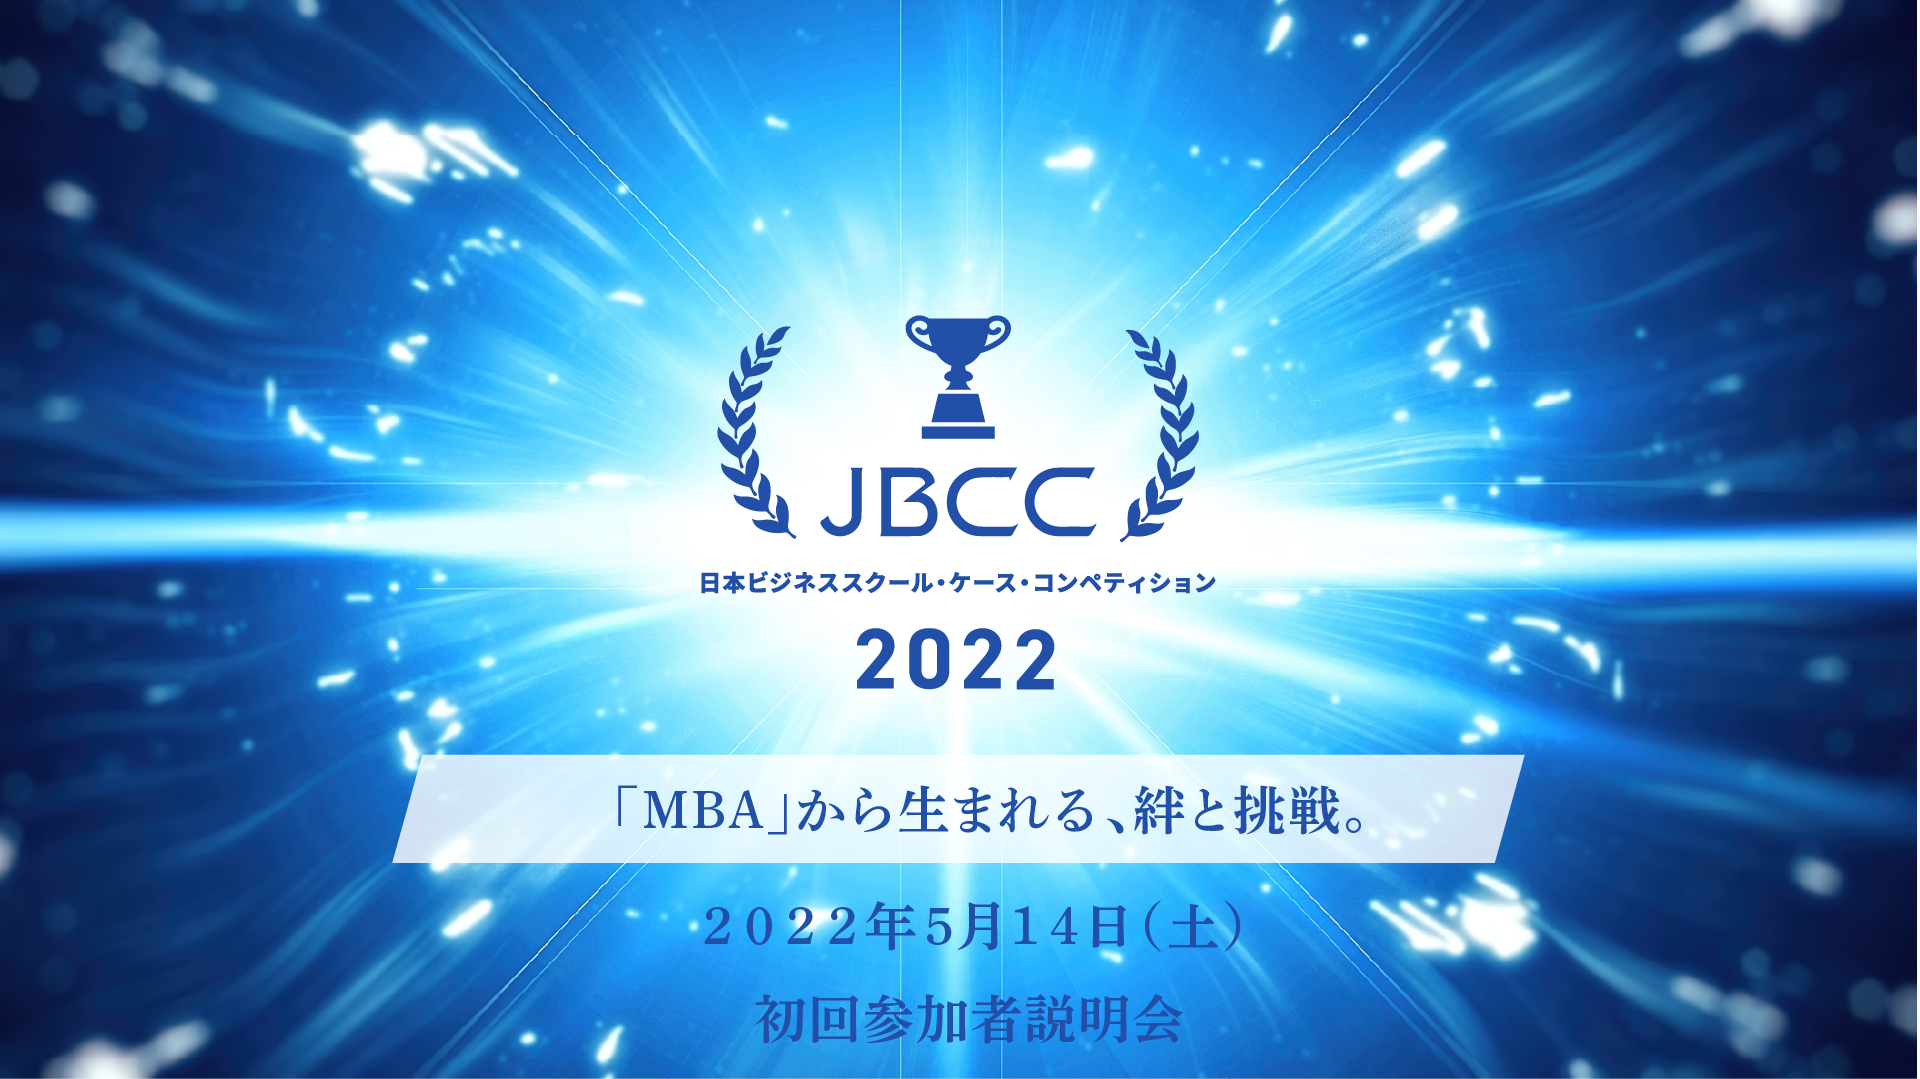 JBCC2022 初回参加者向け説明会（5 月14 日）のお知らせ